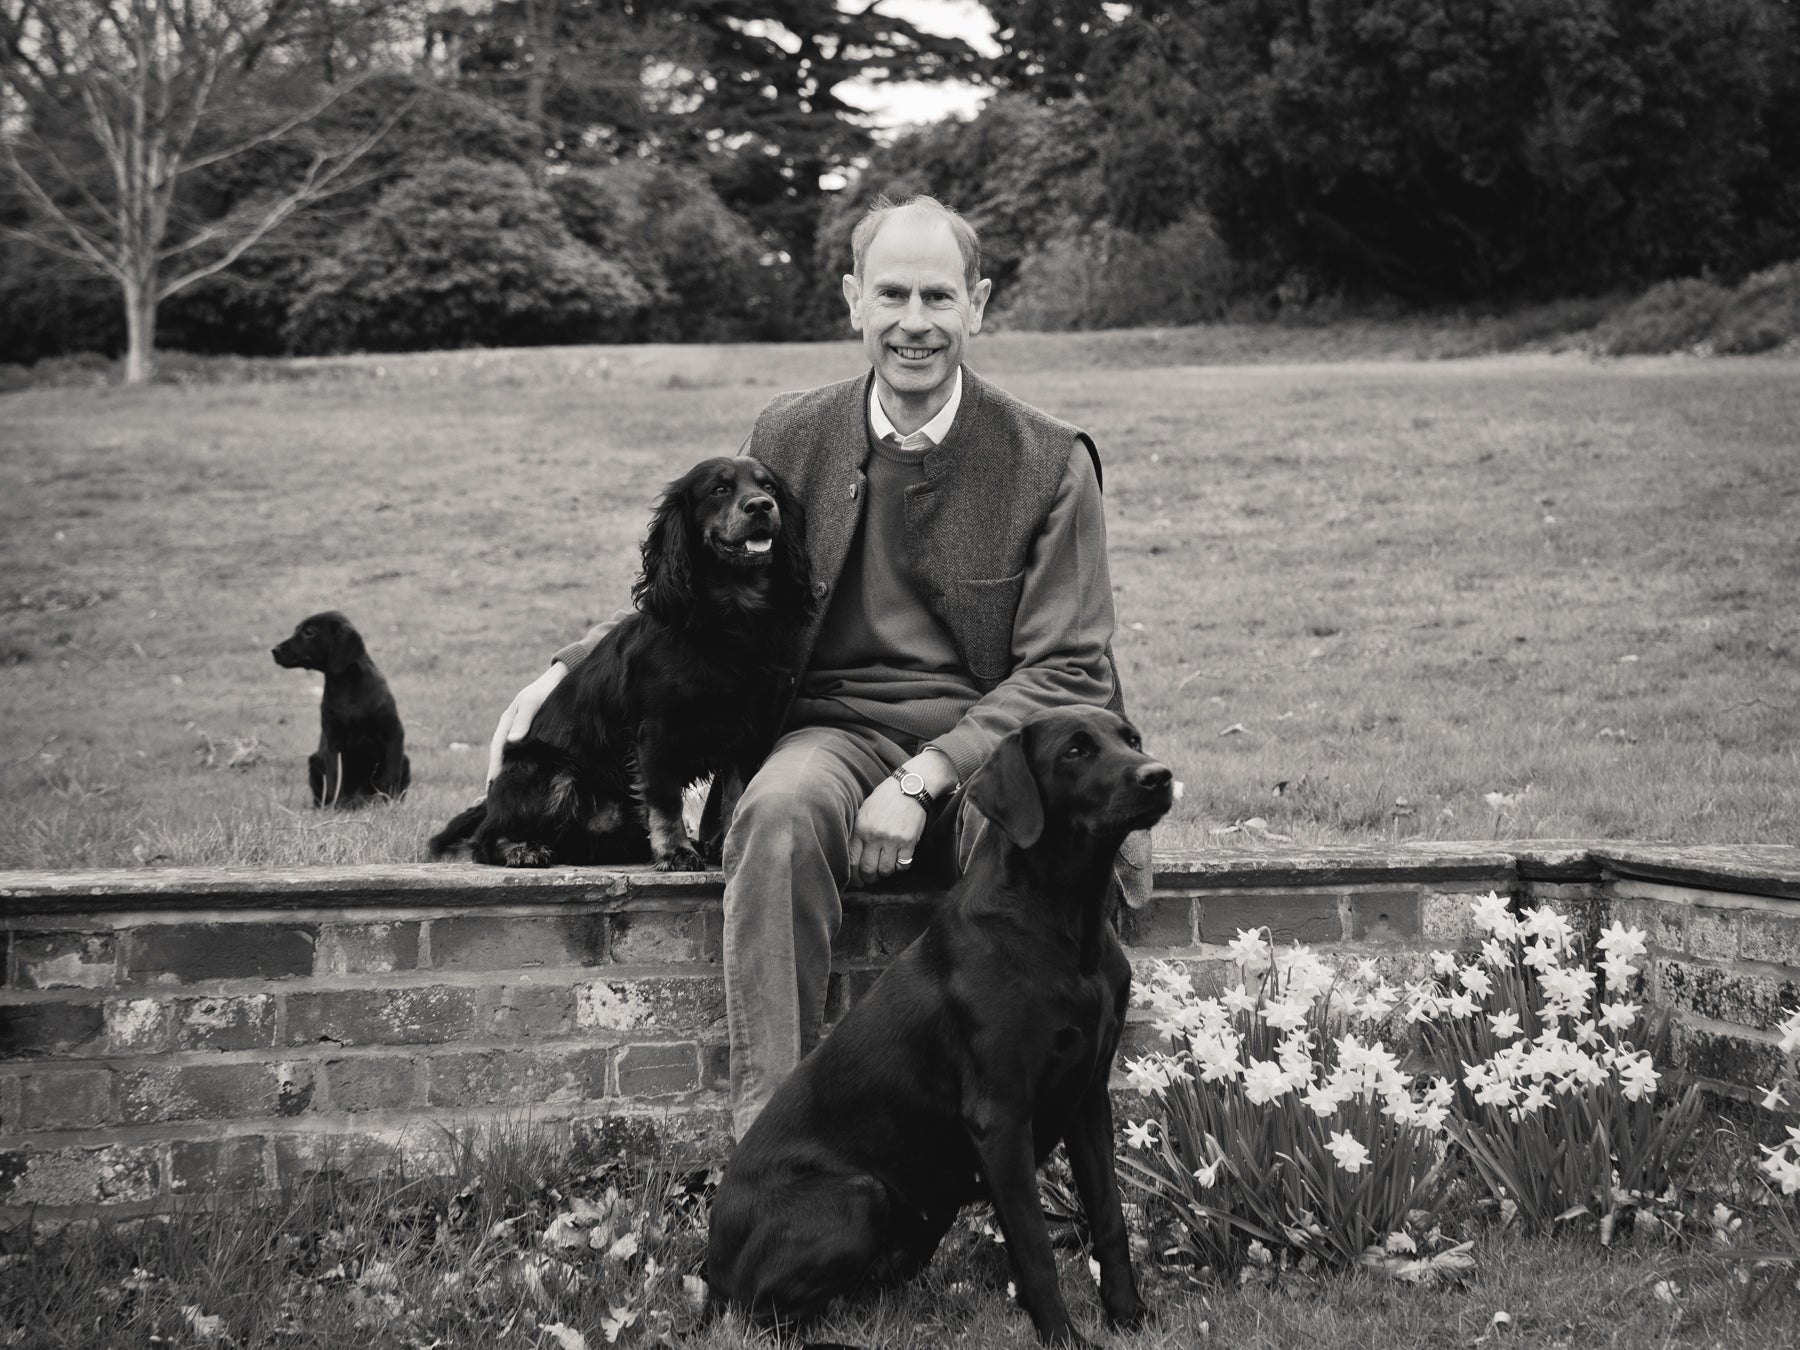 Duke of Edinburgh with Teal (labrador), Mole (cocker spaniel), and Teasel (labrador puppy)